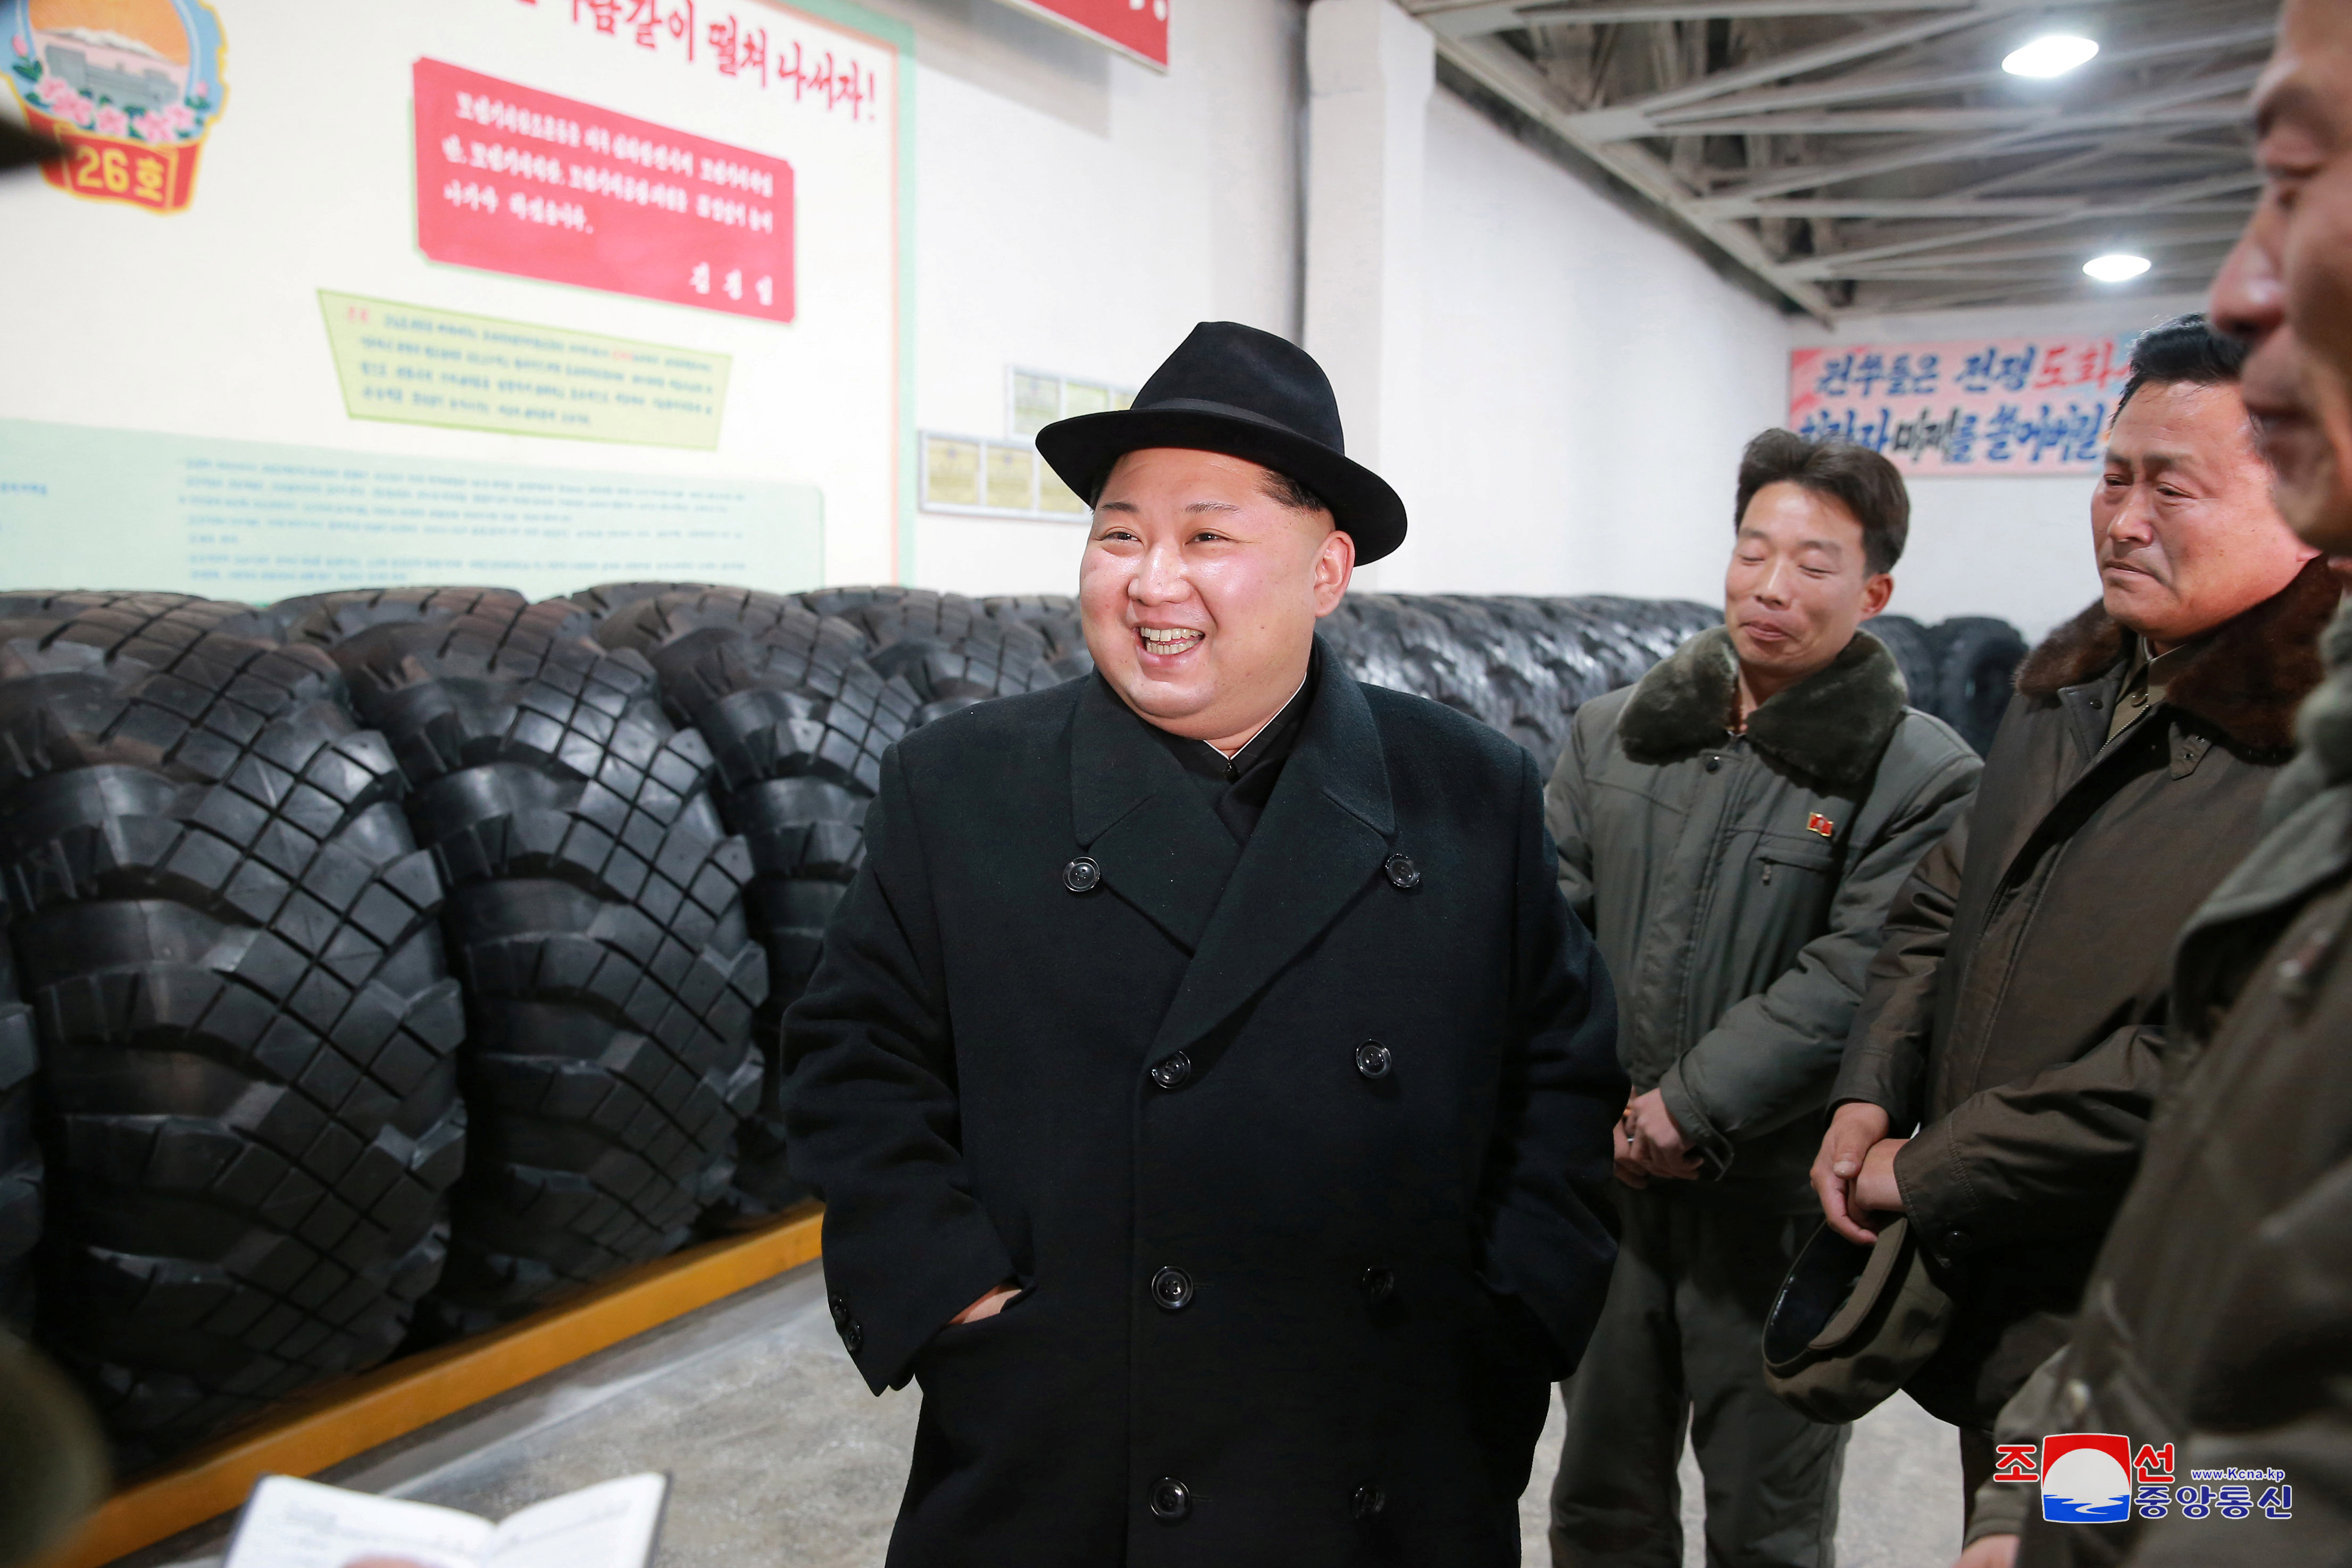 زعيم كوريا الشمالية يزور مصنع تصنيع إطارات